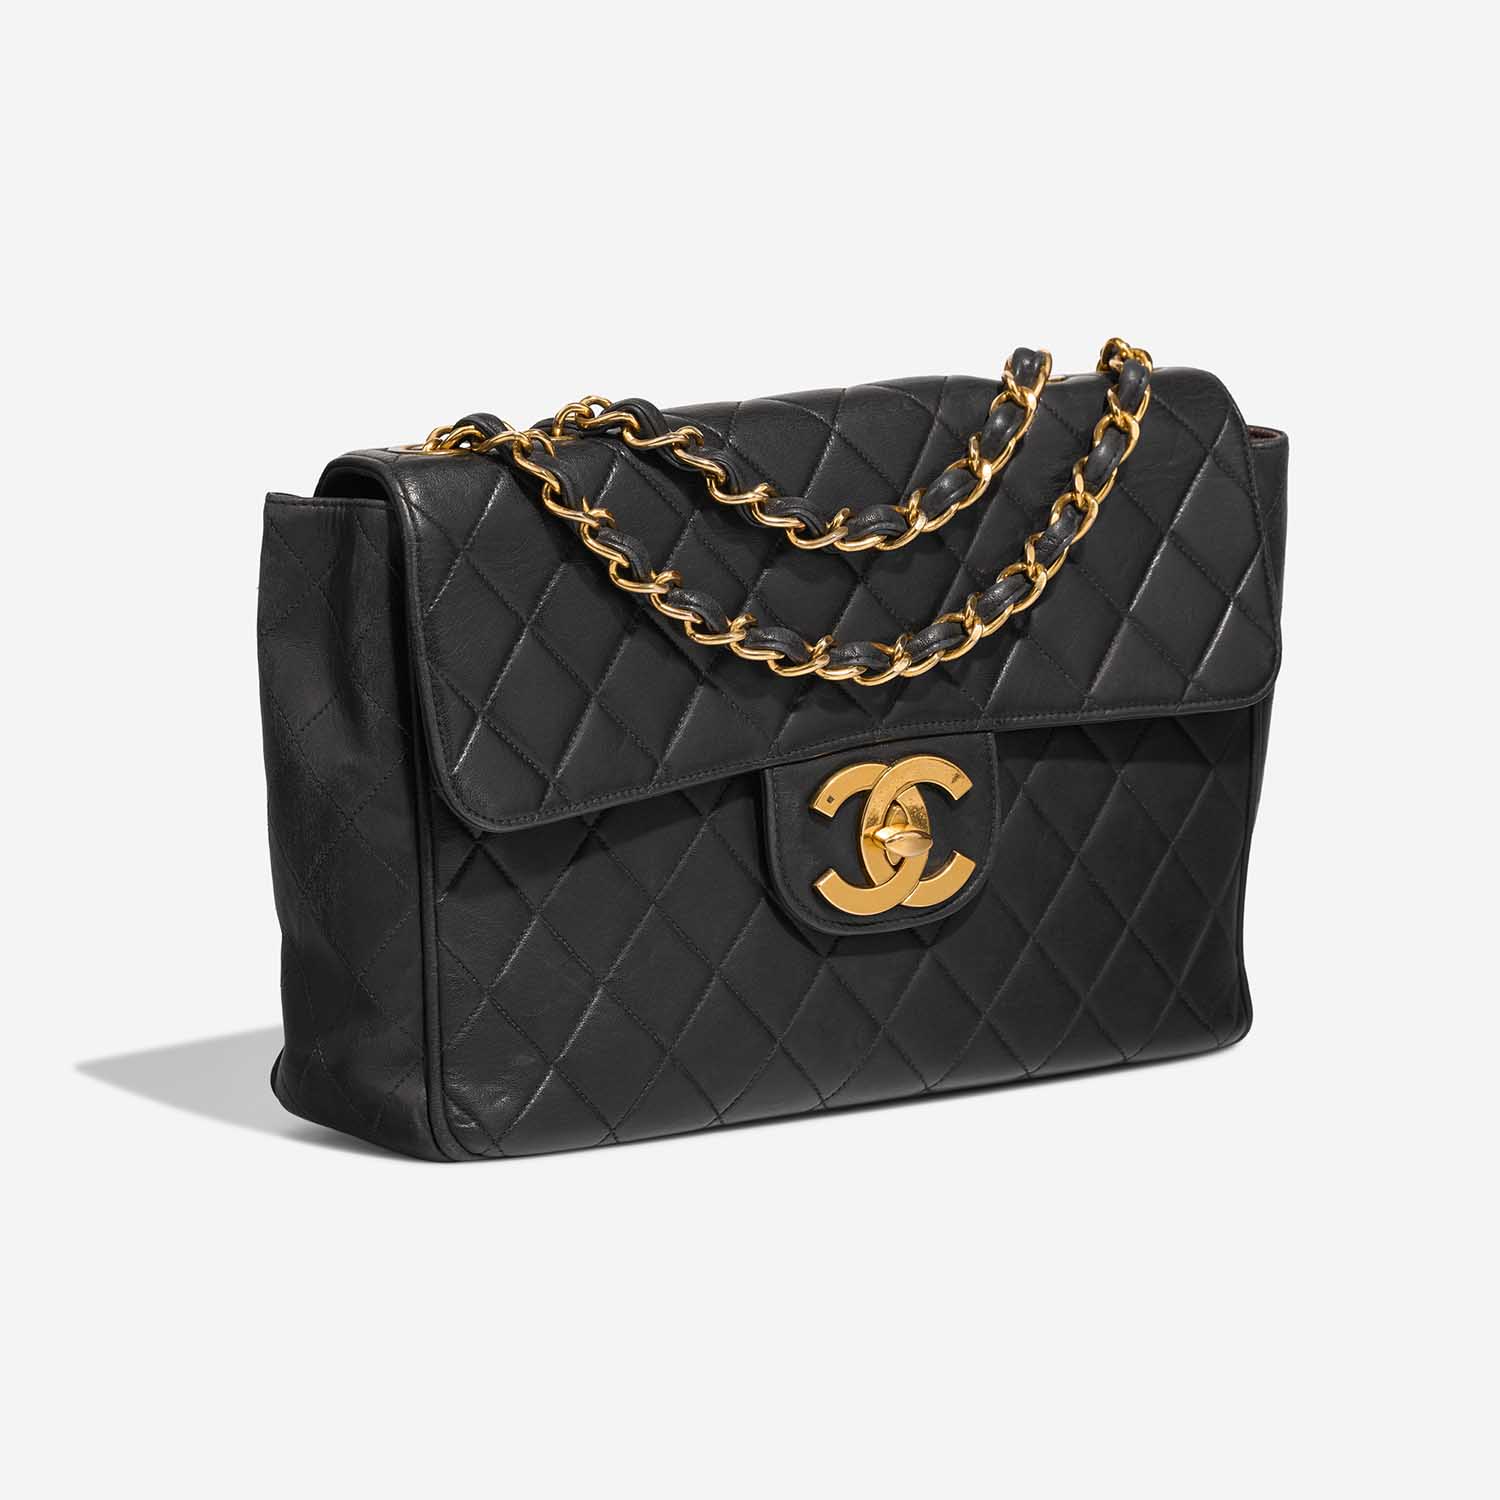 Chanel Timeless Jumbo Black Side Front | Verkaufen Sie Ihre Designer-Tasche auf Saclab.com